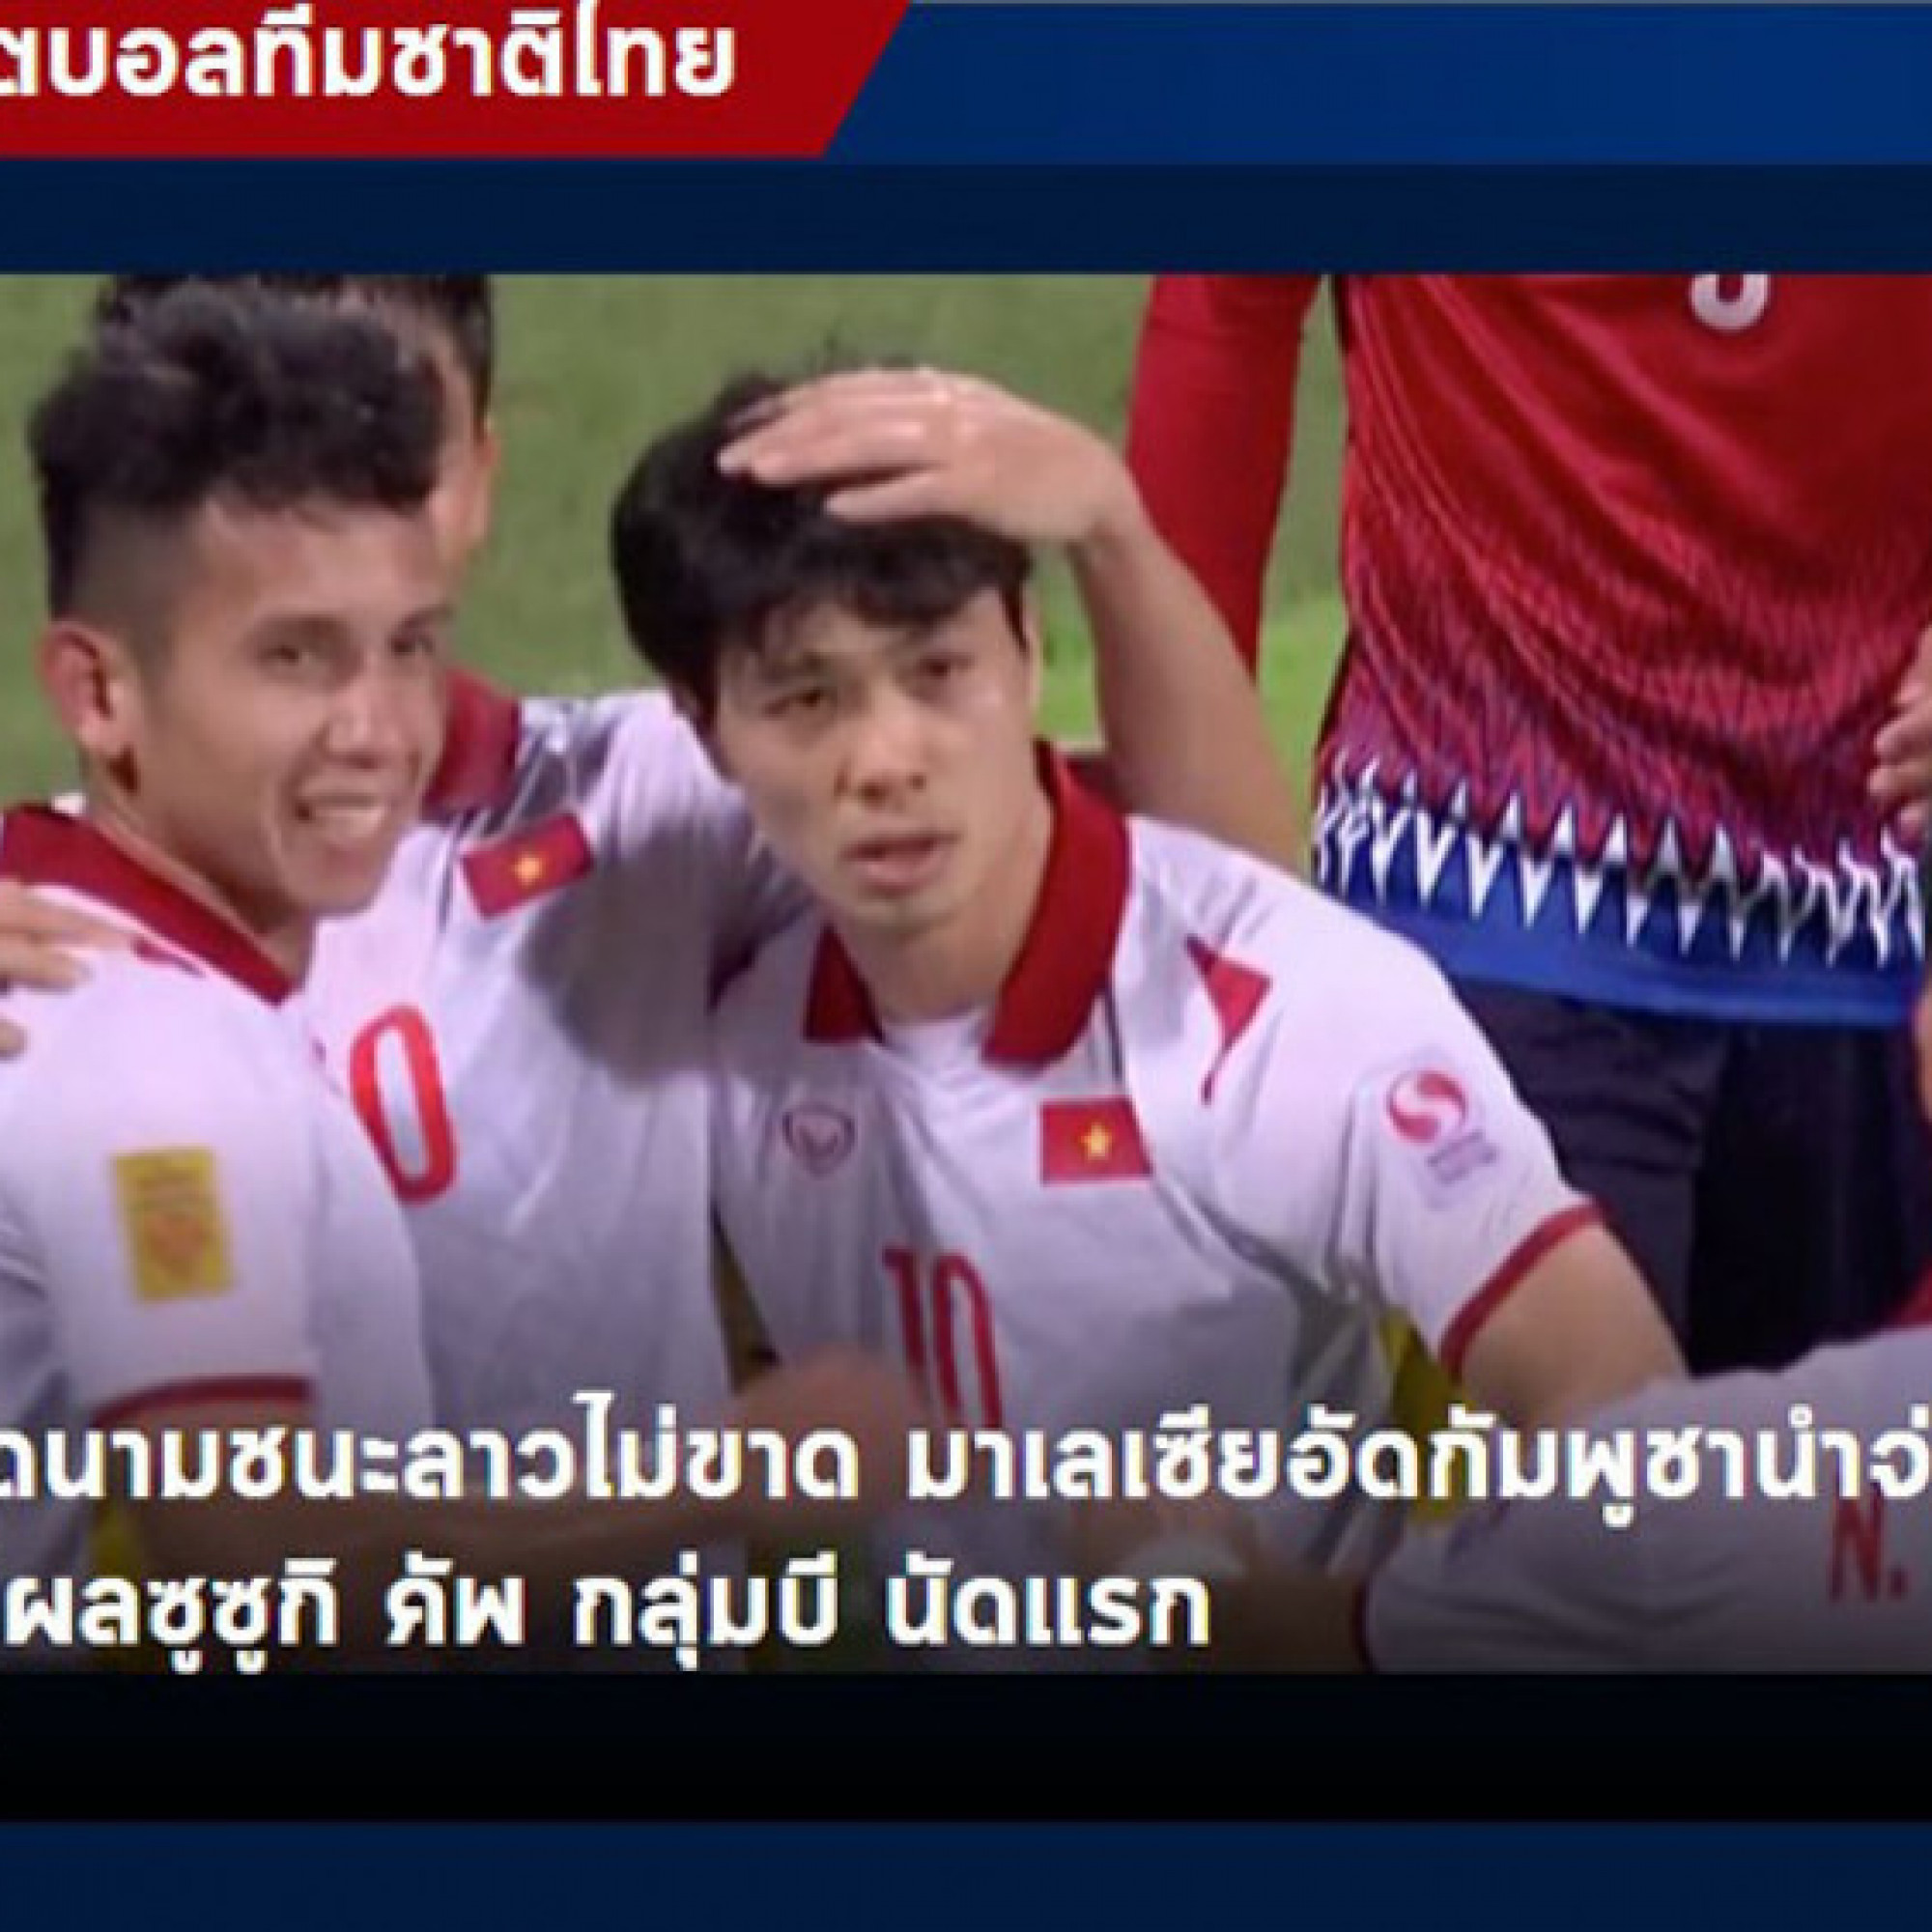 Thể thao - ĐT Việt Nam thắng Lào: Báo Thái khen Văn Đức, báo Indonesia lo lắng